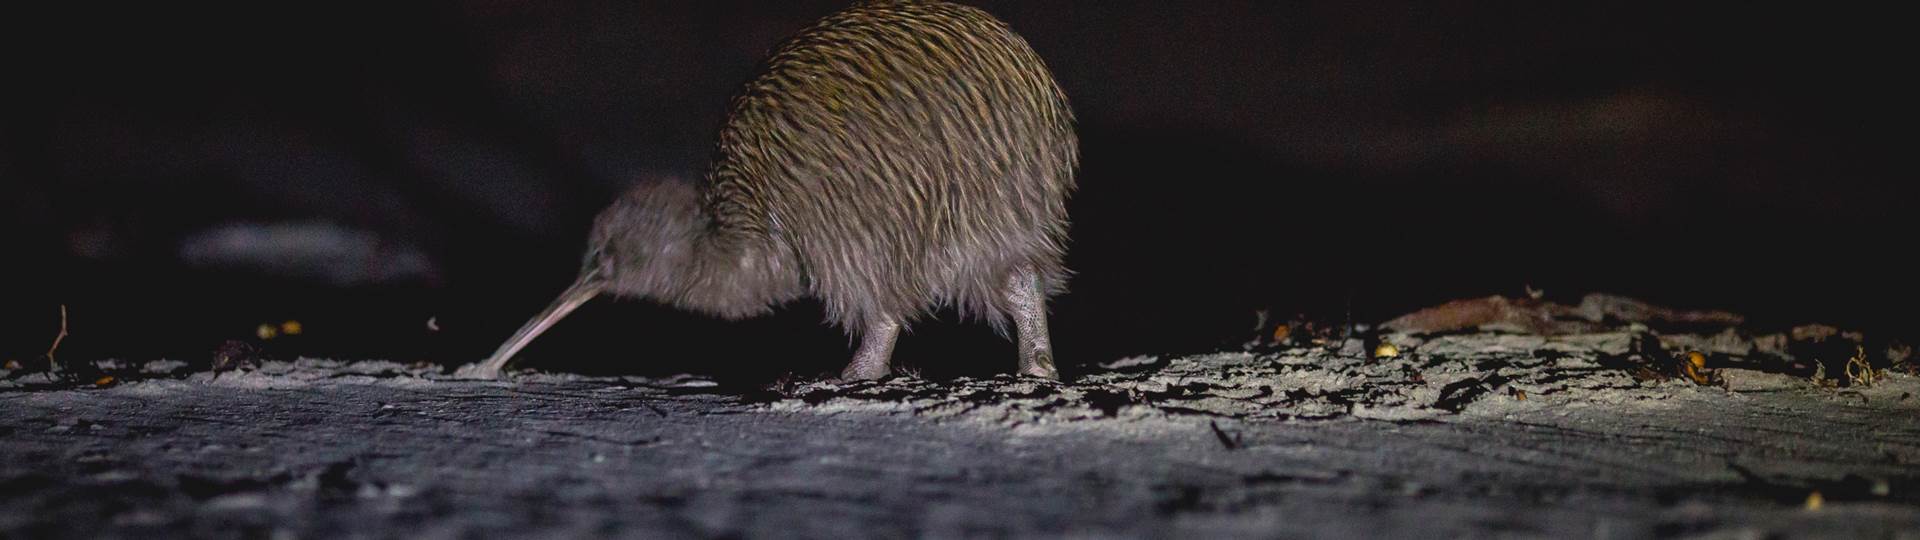 A wild kiwi bird explores Steward Island after dark